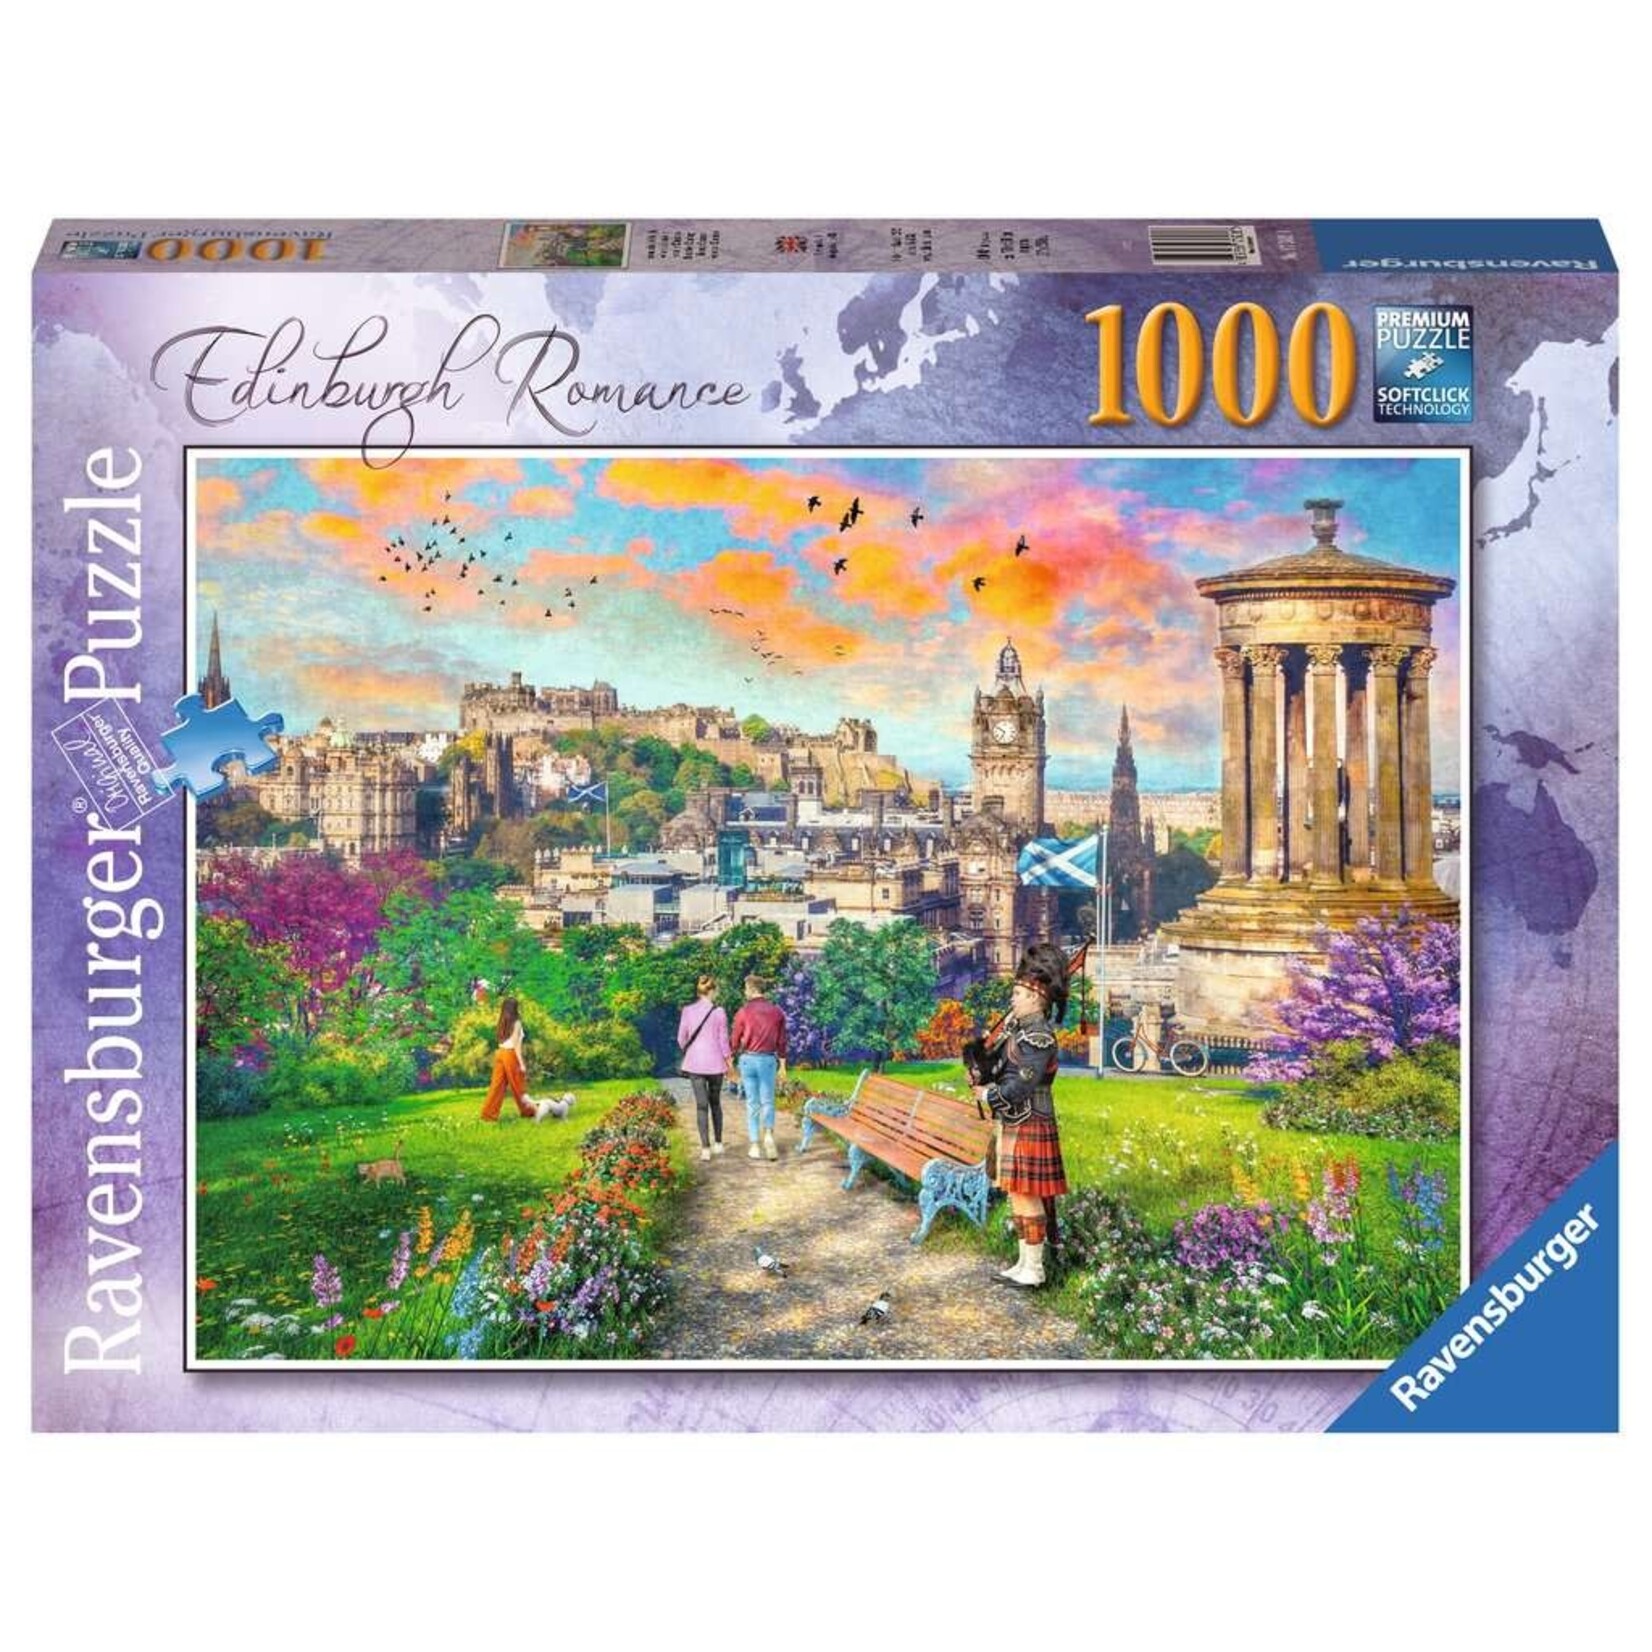 Ravensburger Ravensburger puzzel Edinburgh Romance (1000 stukjes)